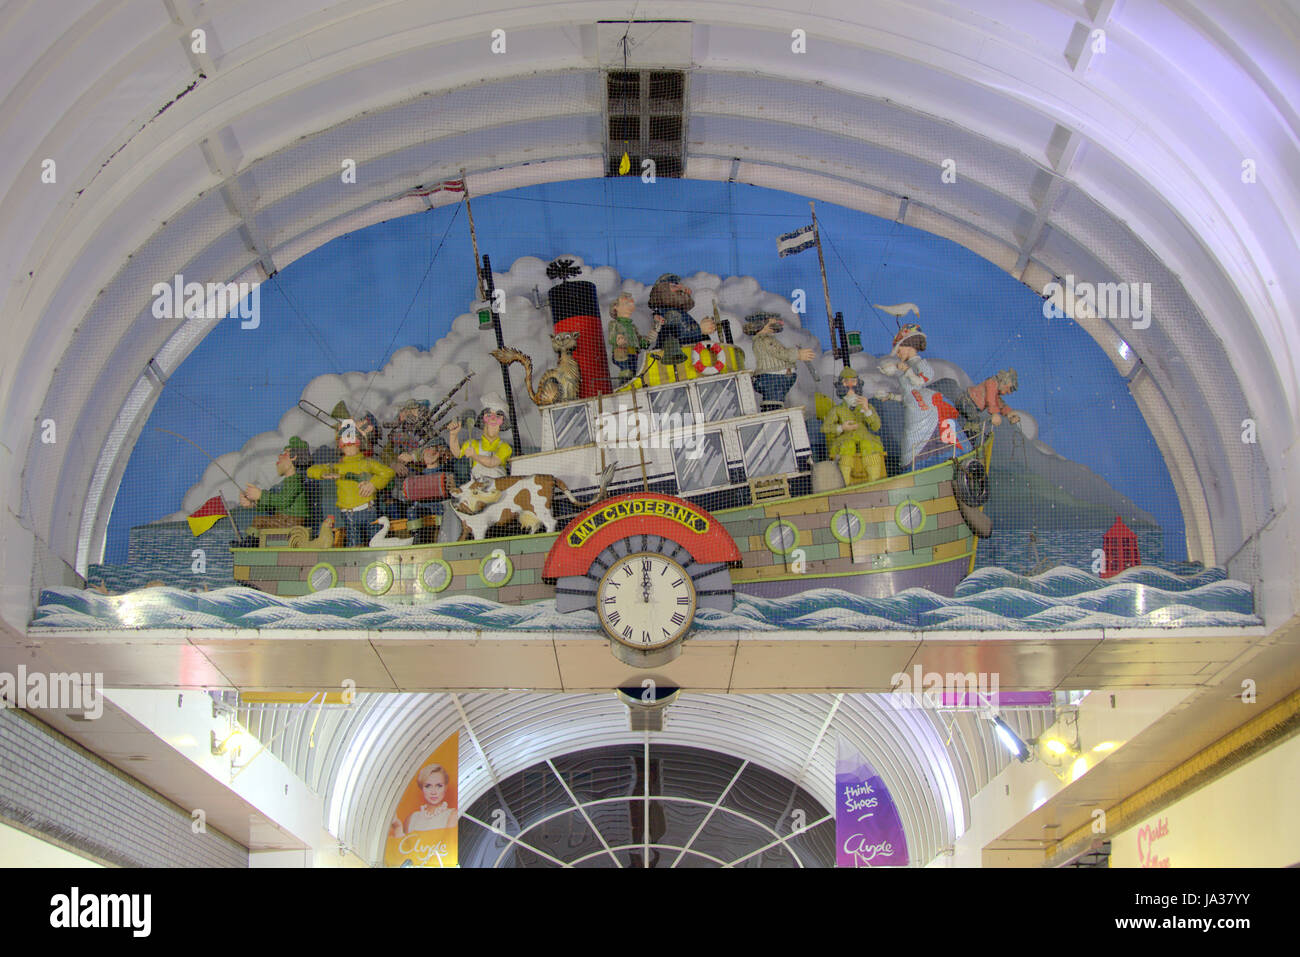 MV Clydebank novità orologio centro shopping arte pubblica murale 3d che rappresenta la storia pubblica della città Foto Stock